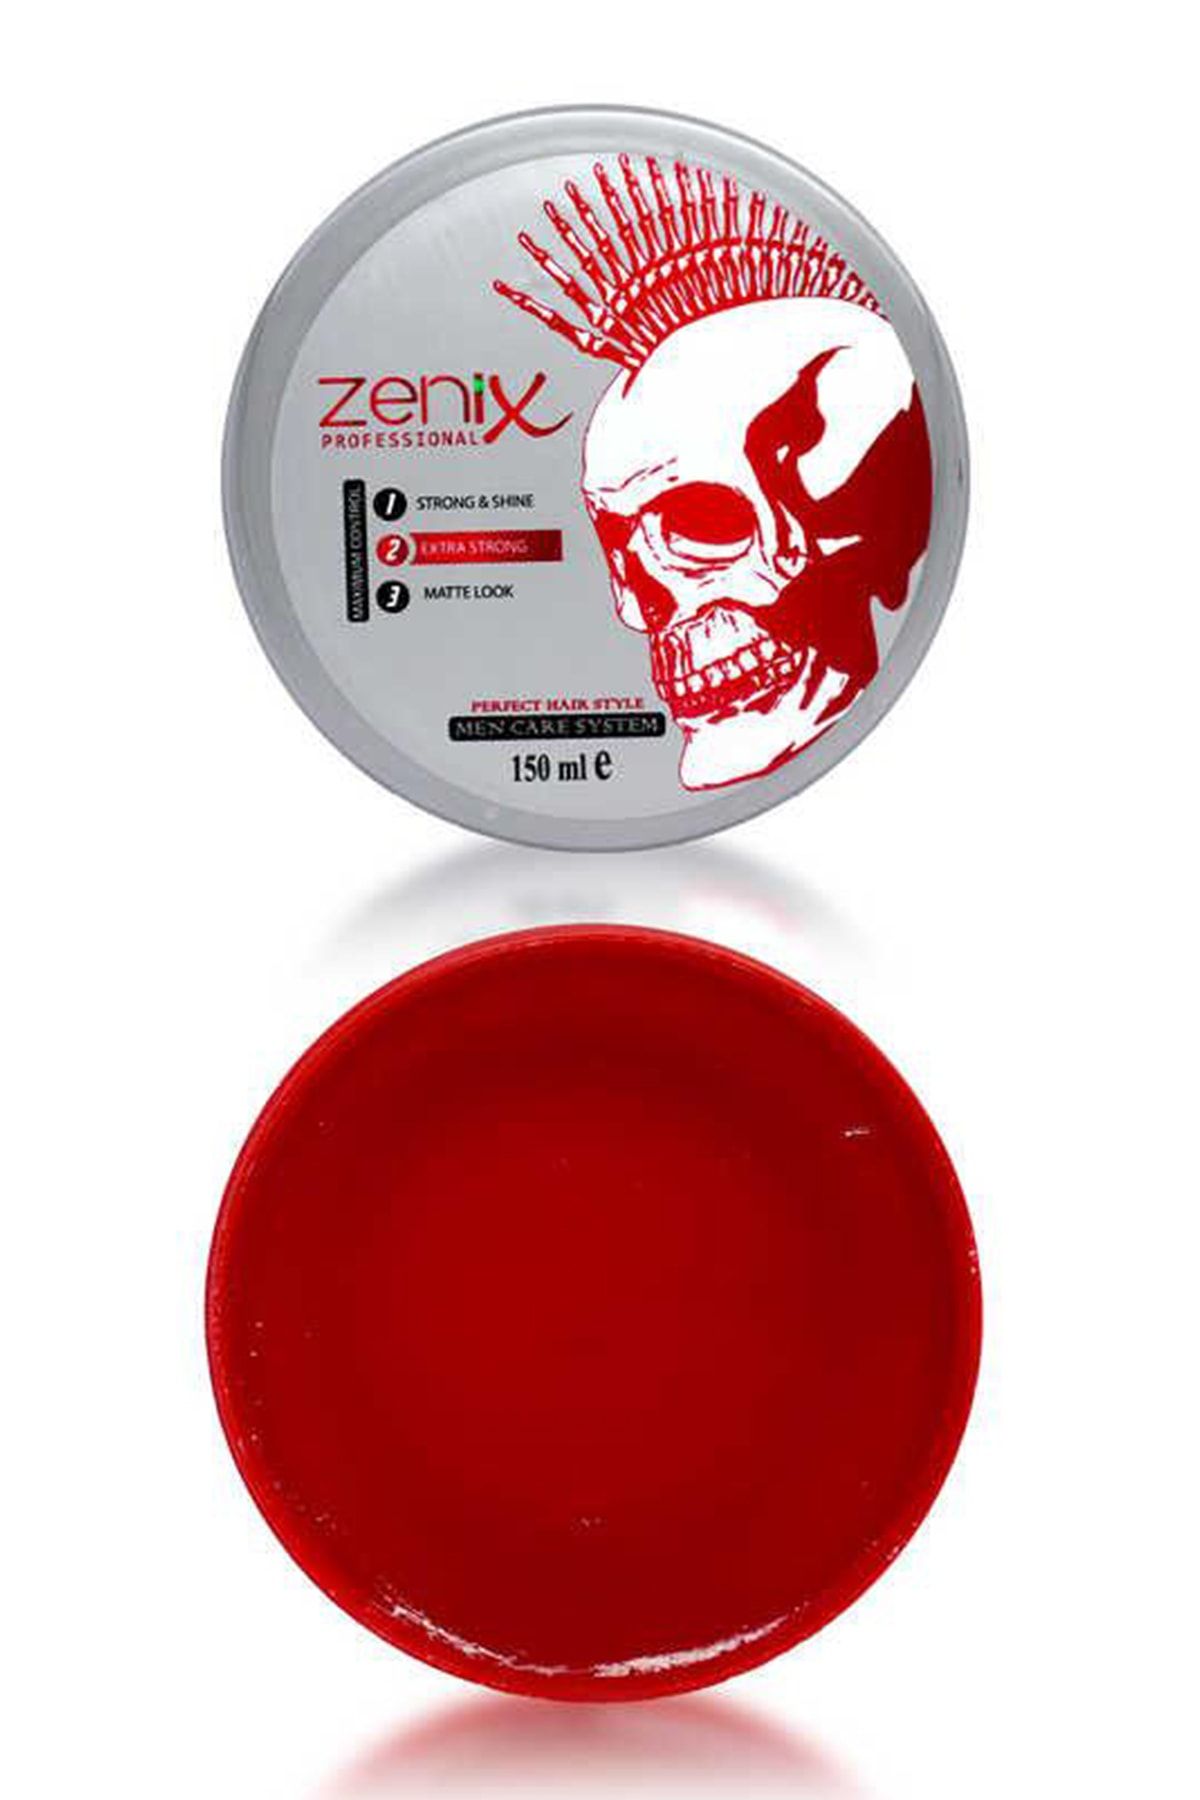 Zenix Extra Strong Wax 150ml